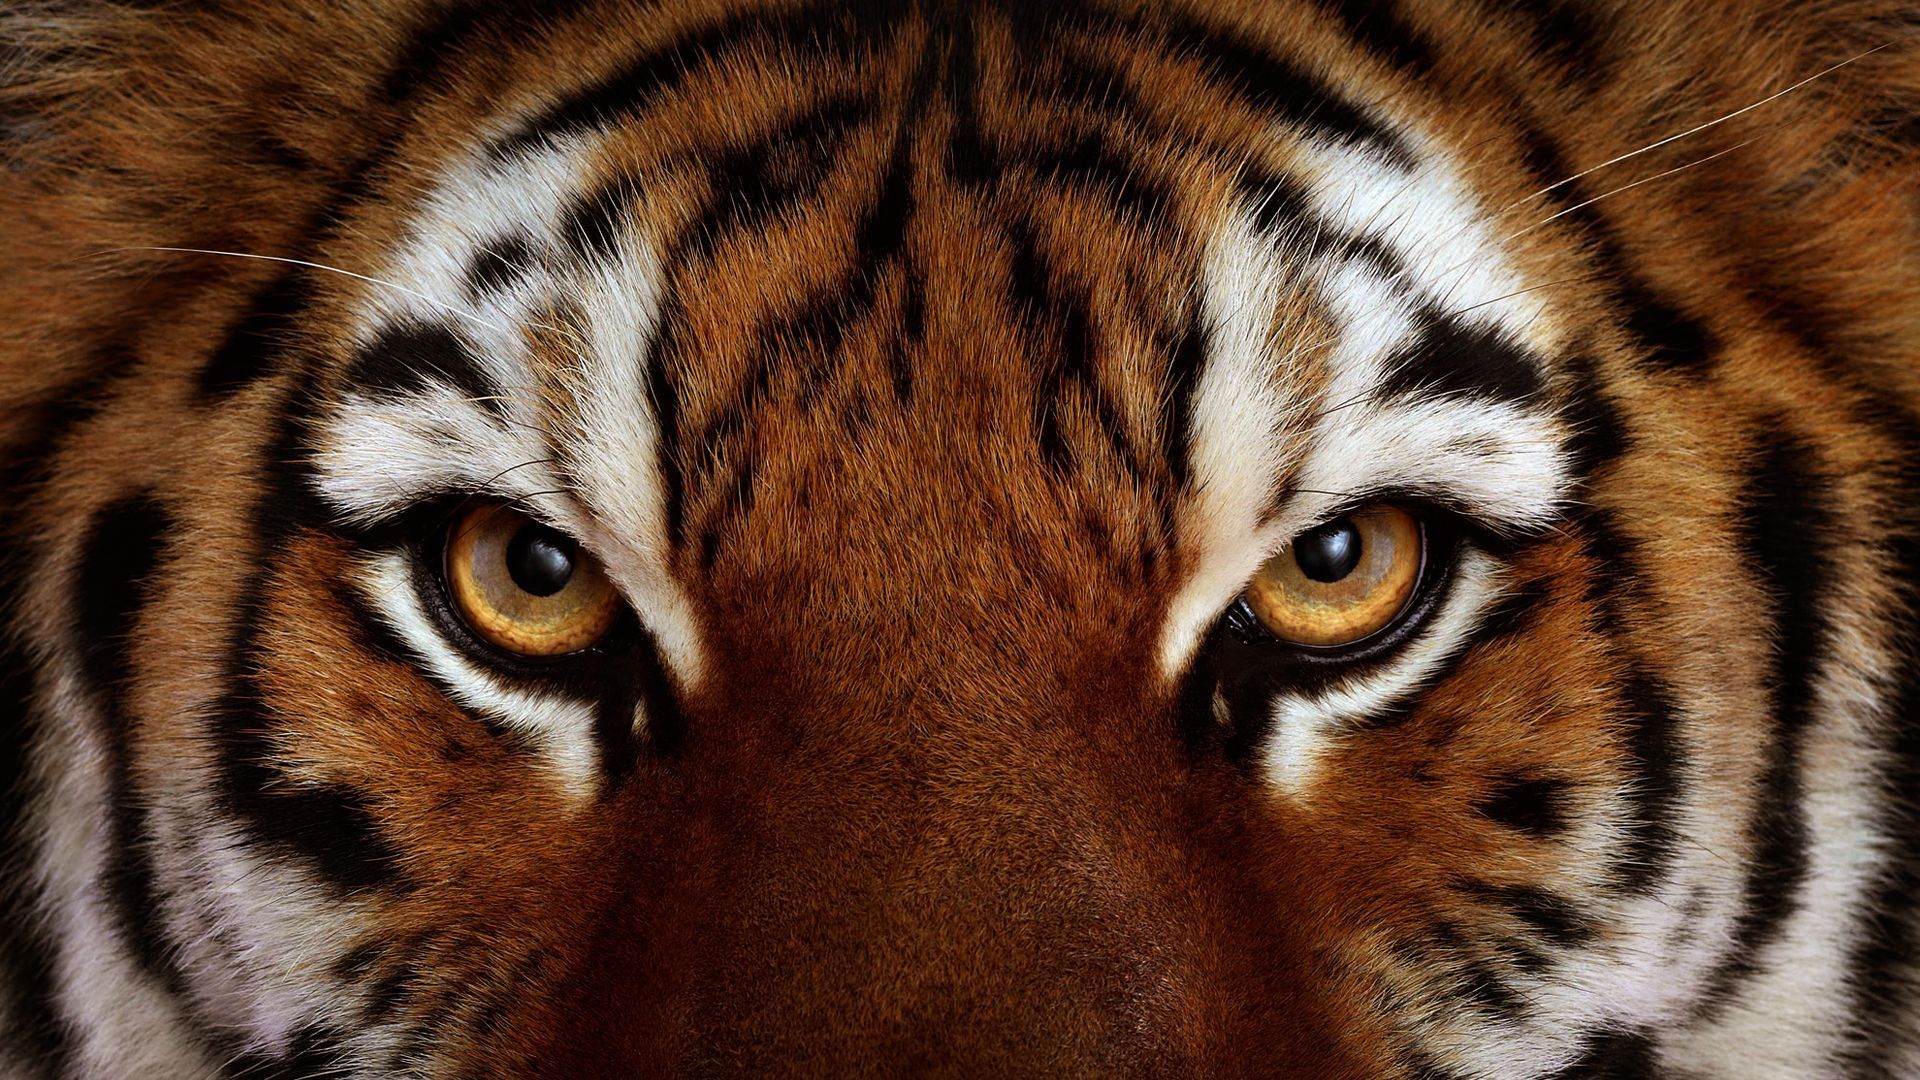 Tiger Face - wallpaper